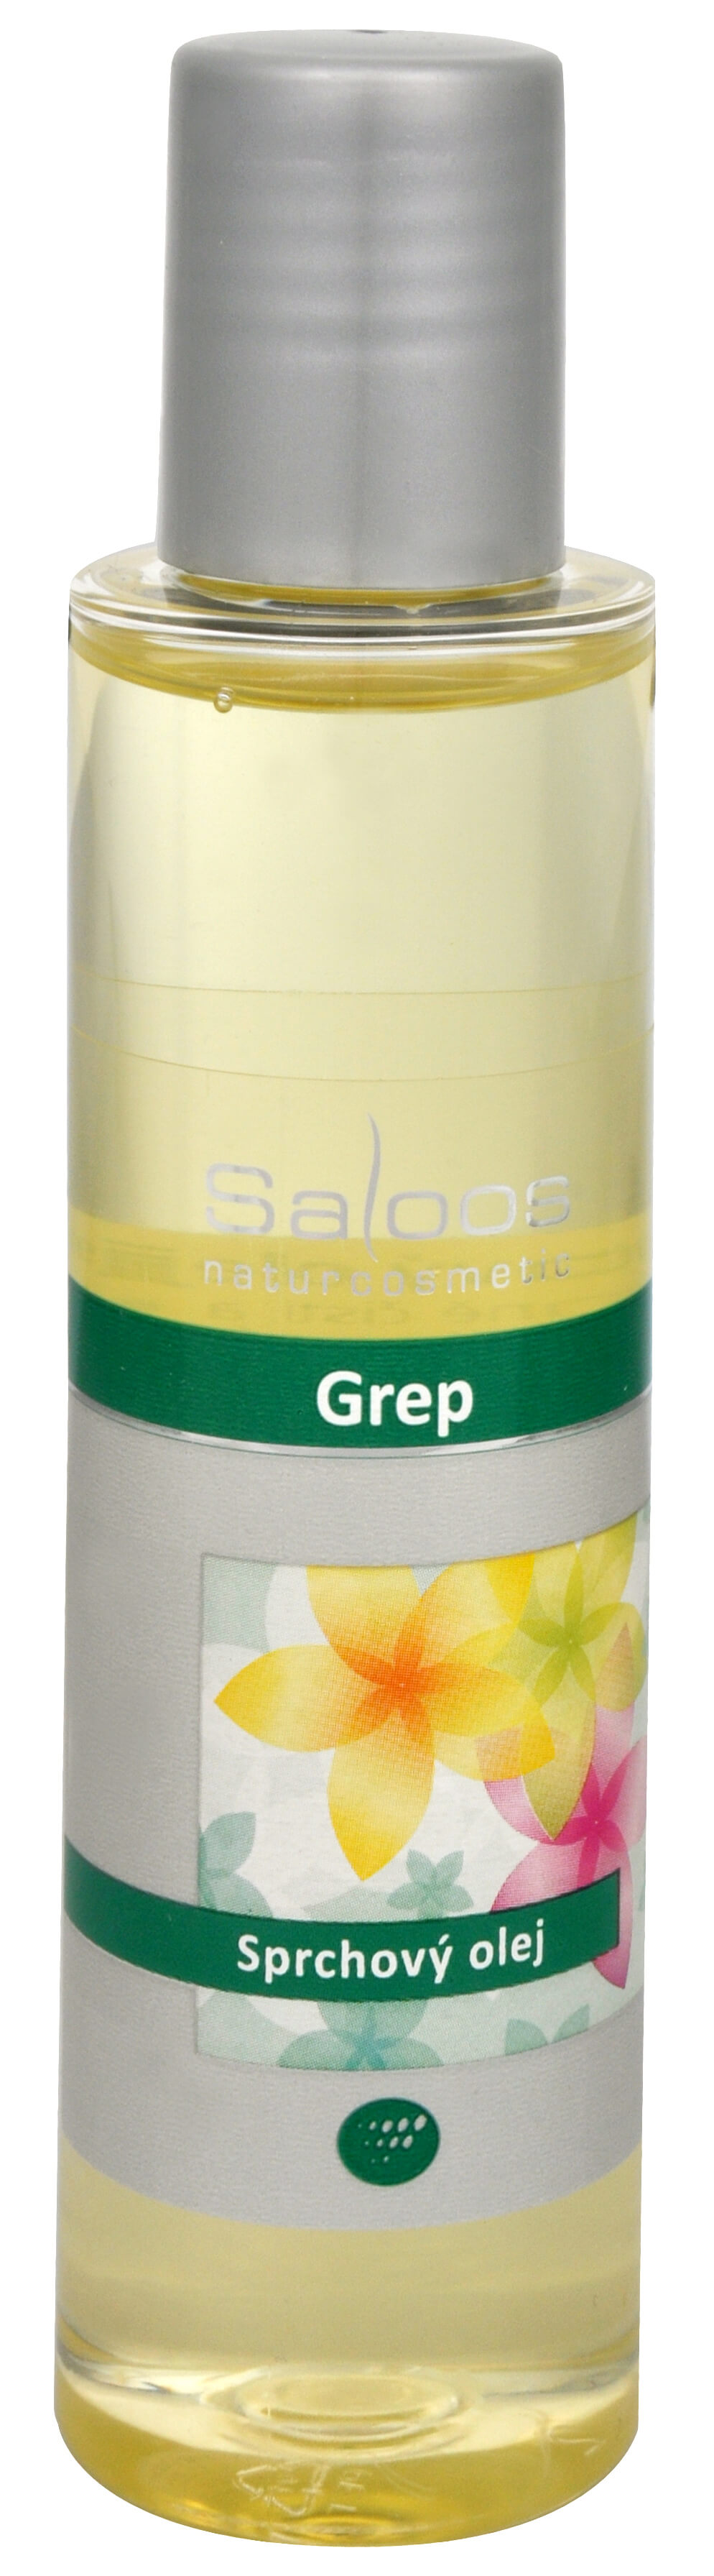 Zobrazit detail výrobku Saloos Sprchový olej - Grep 125 ml